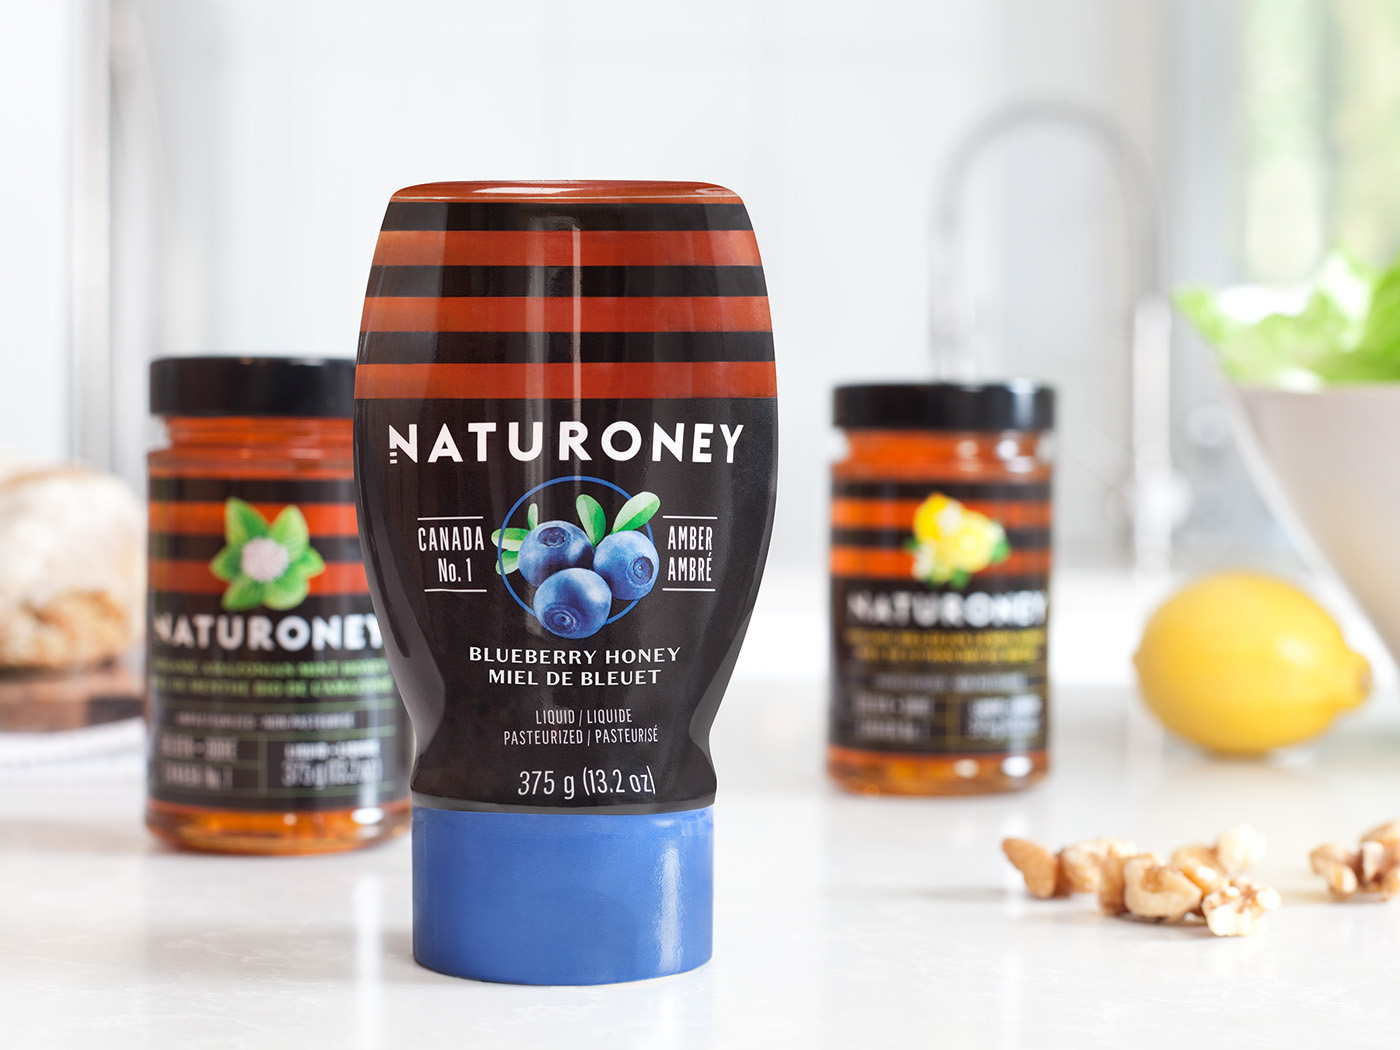 Naturoney, the nature of honey